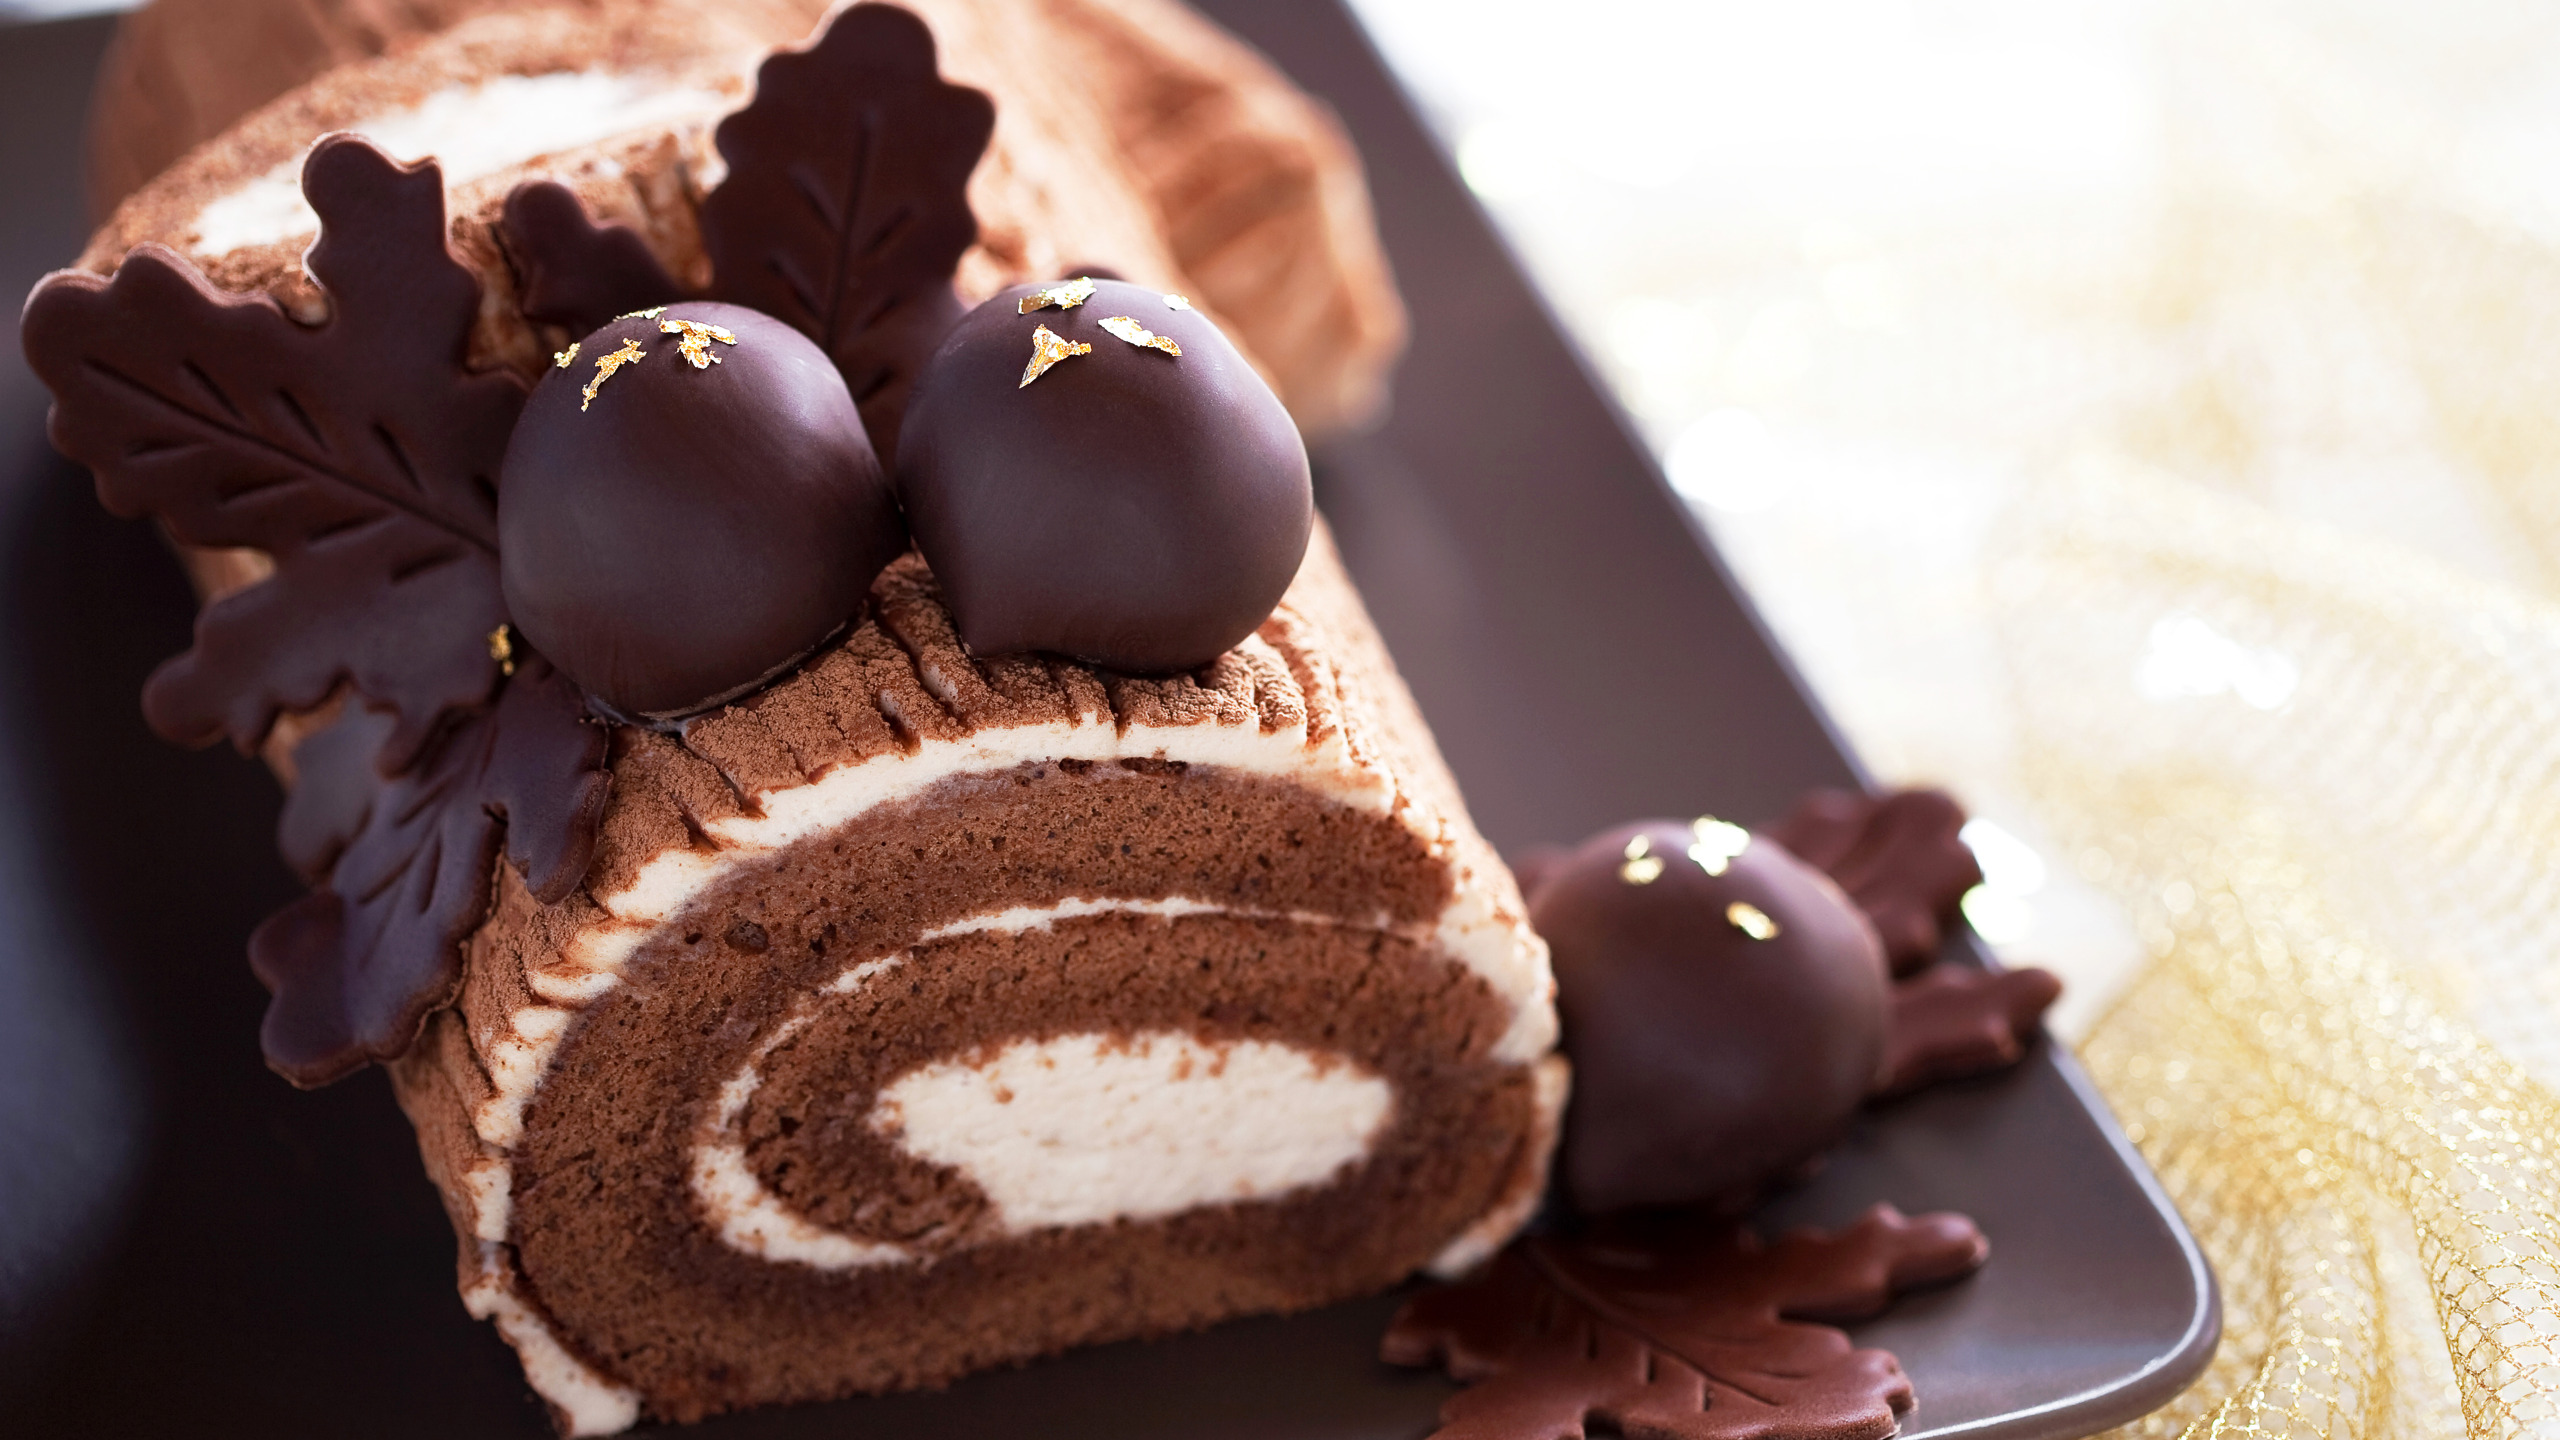 Пирожное 2 шоколада. Пирожное «рулет шоколадно-фруктовый». Катрин Баер шоколадный рулет. Шоколадное пирожное. Пирожное с шоколадом.